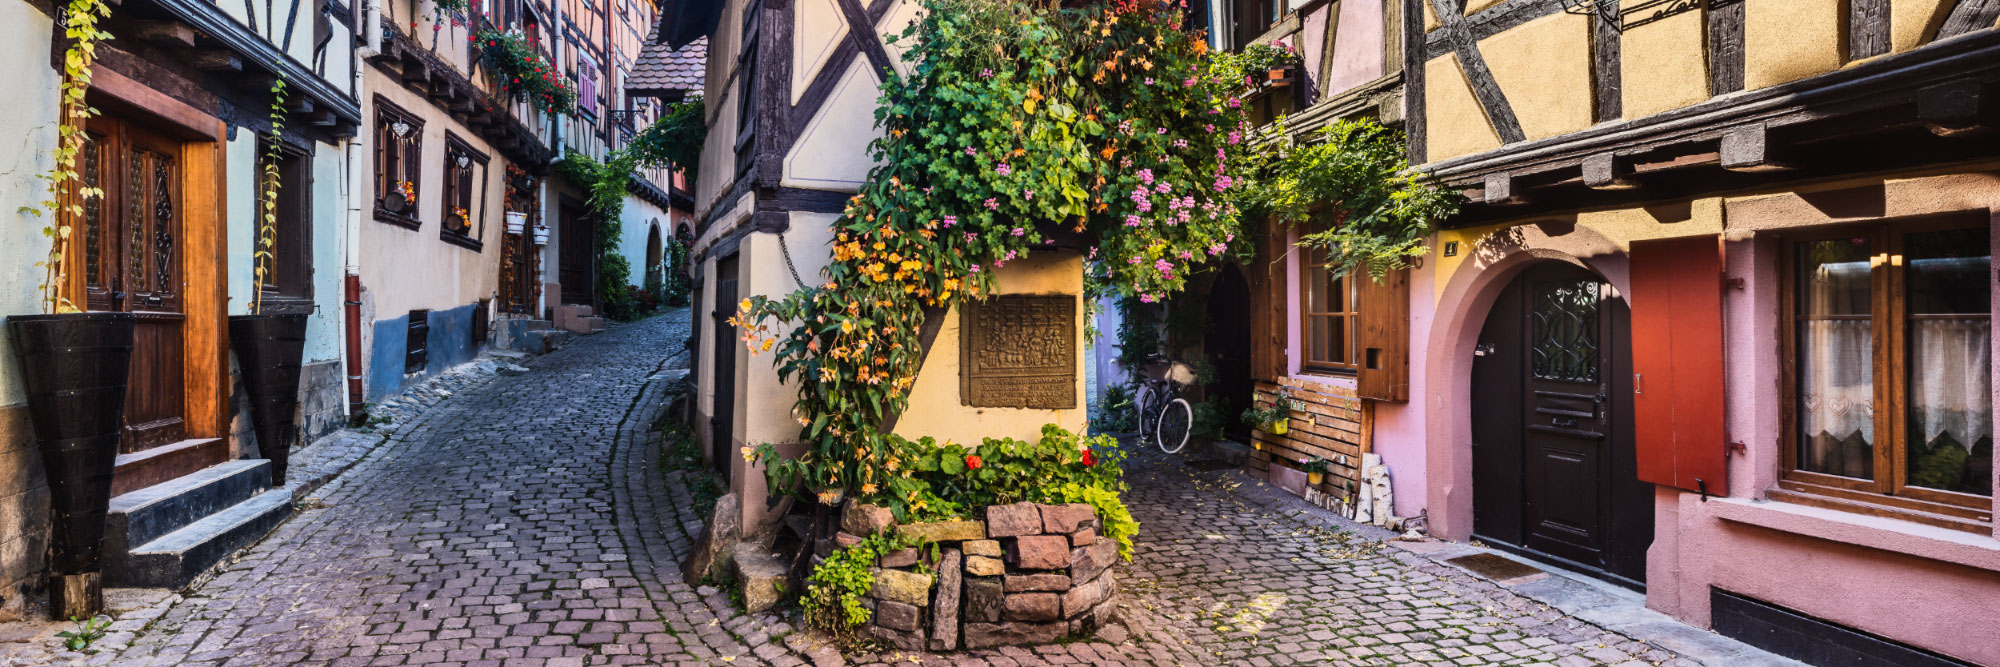 Rue du Rempart, Eguisheim, Alsace